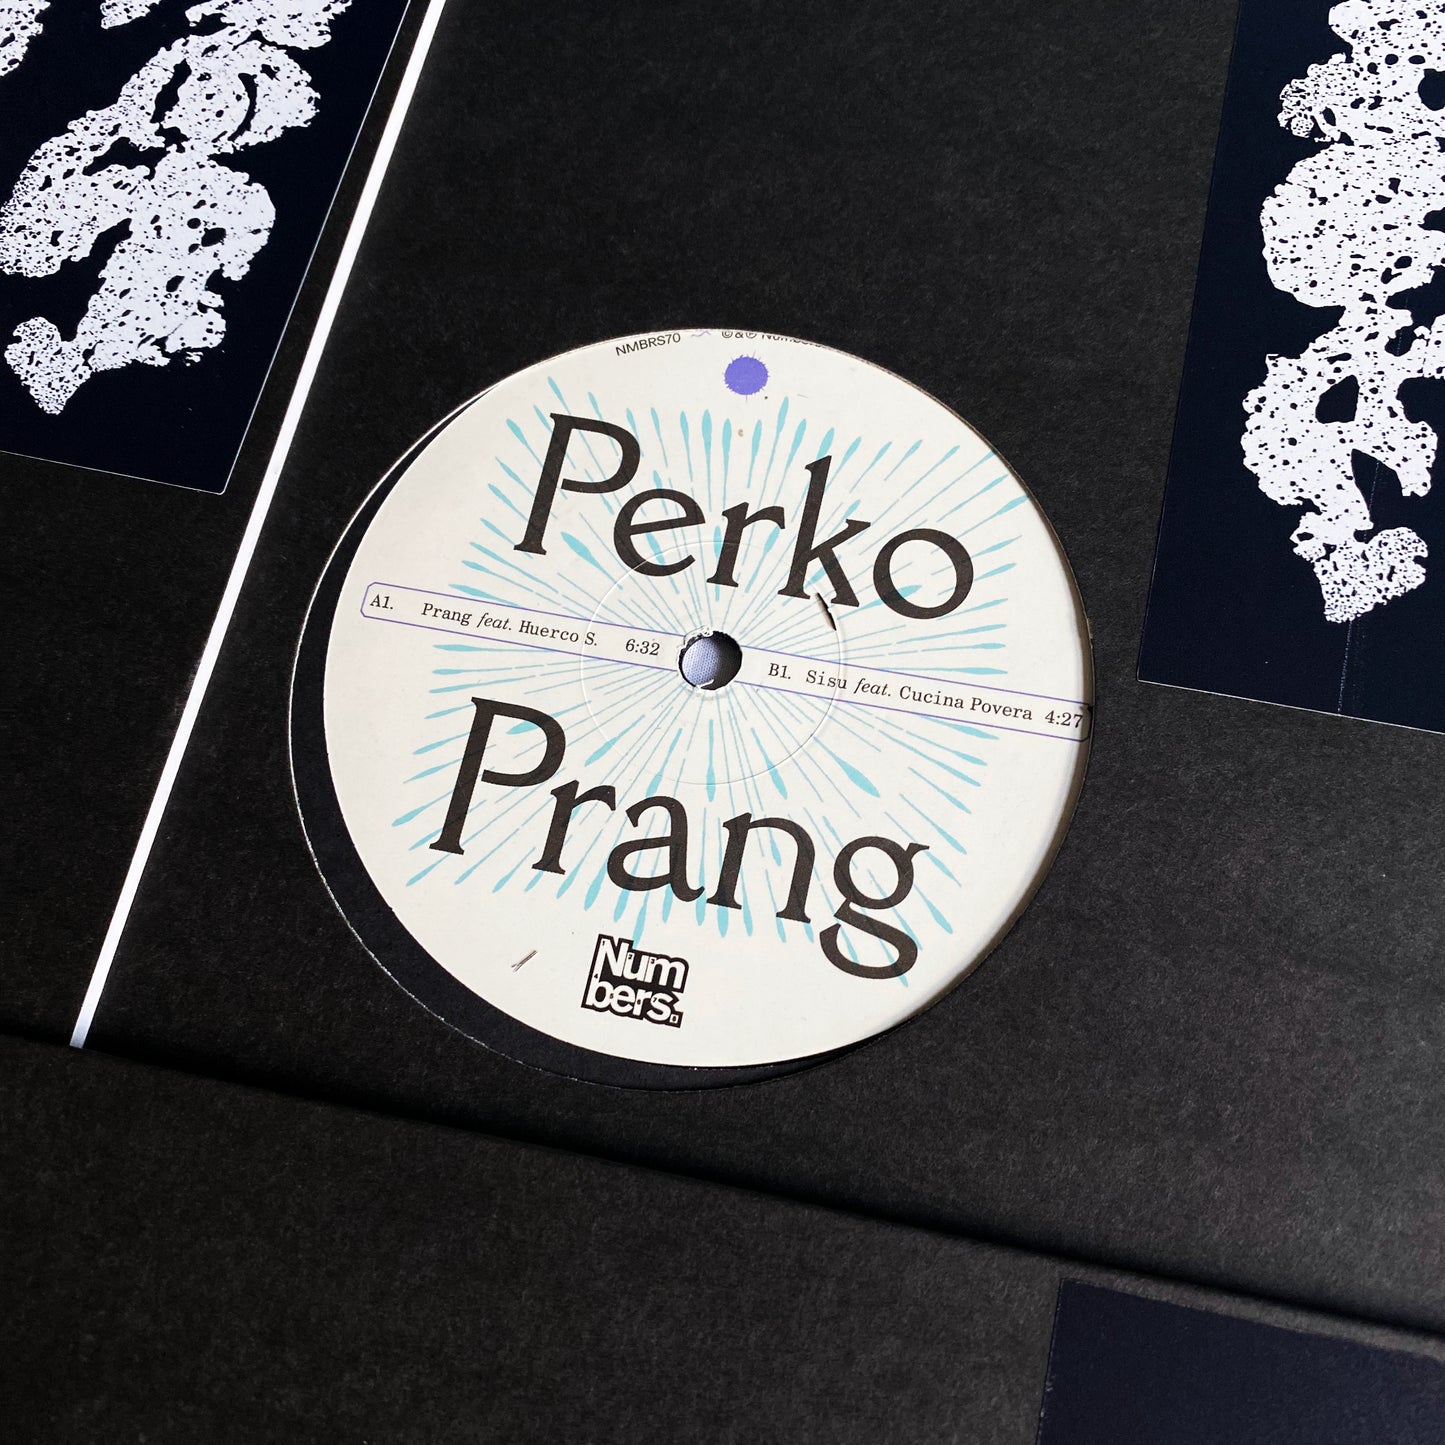 Perko - Prang (Huerco S. & Cucina Povera)